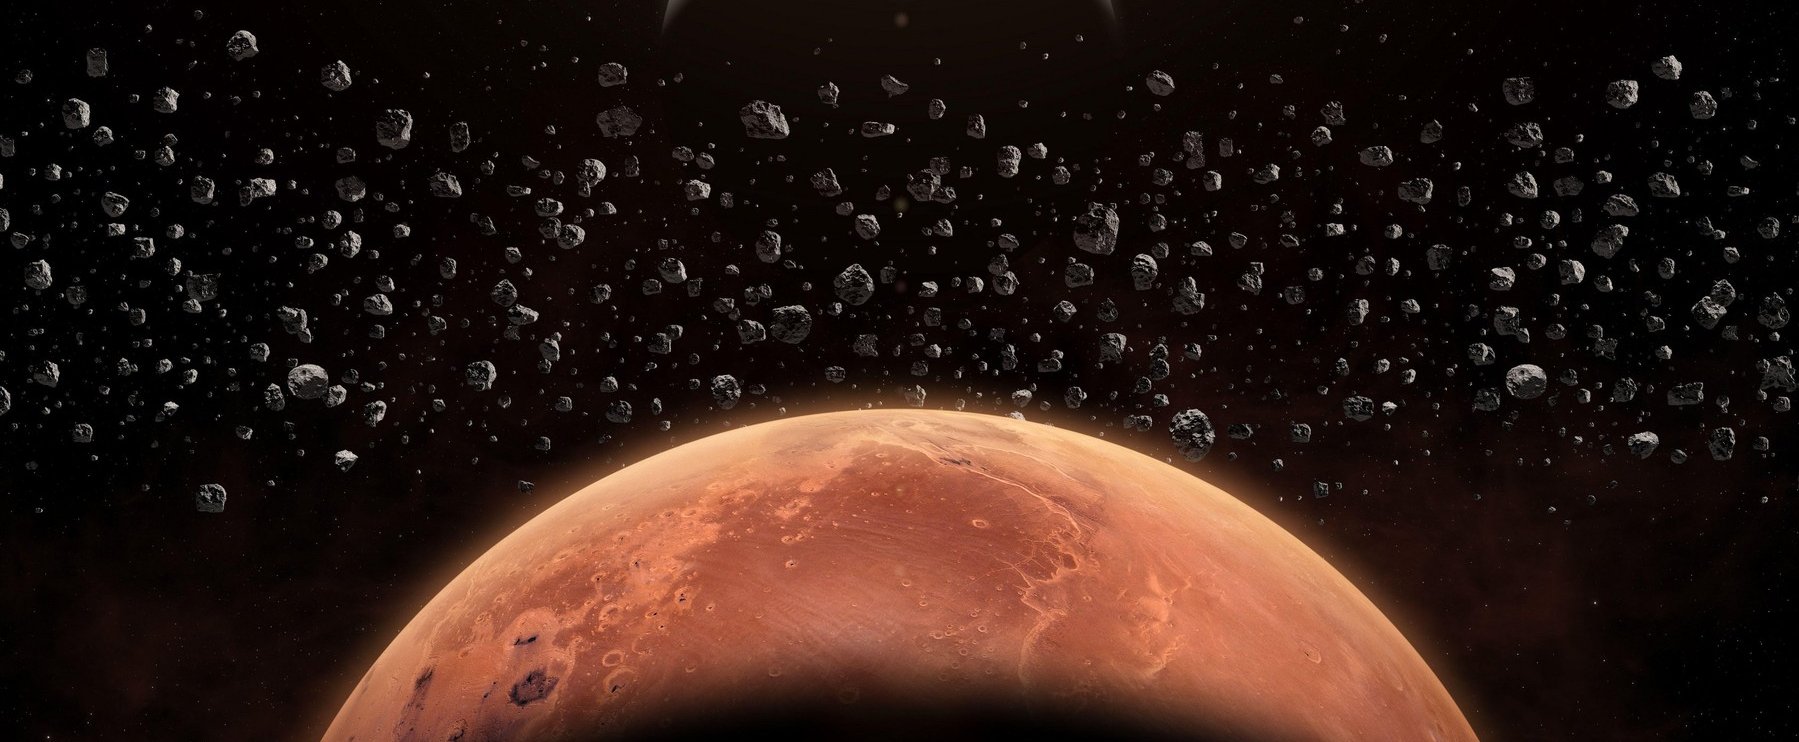 Nem várt felfedezés sokkolta a NASA tudósait a Marson, nincsen magyarázat egyelőre